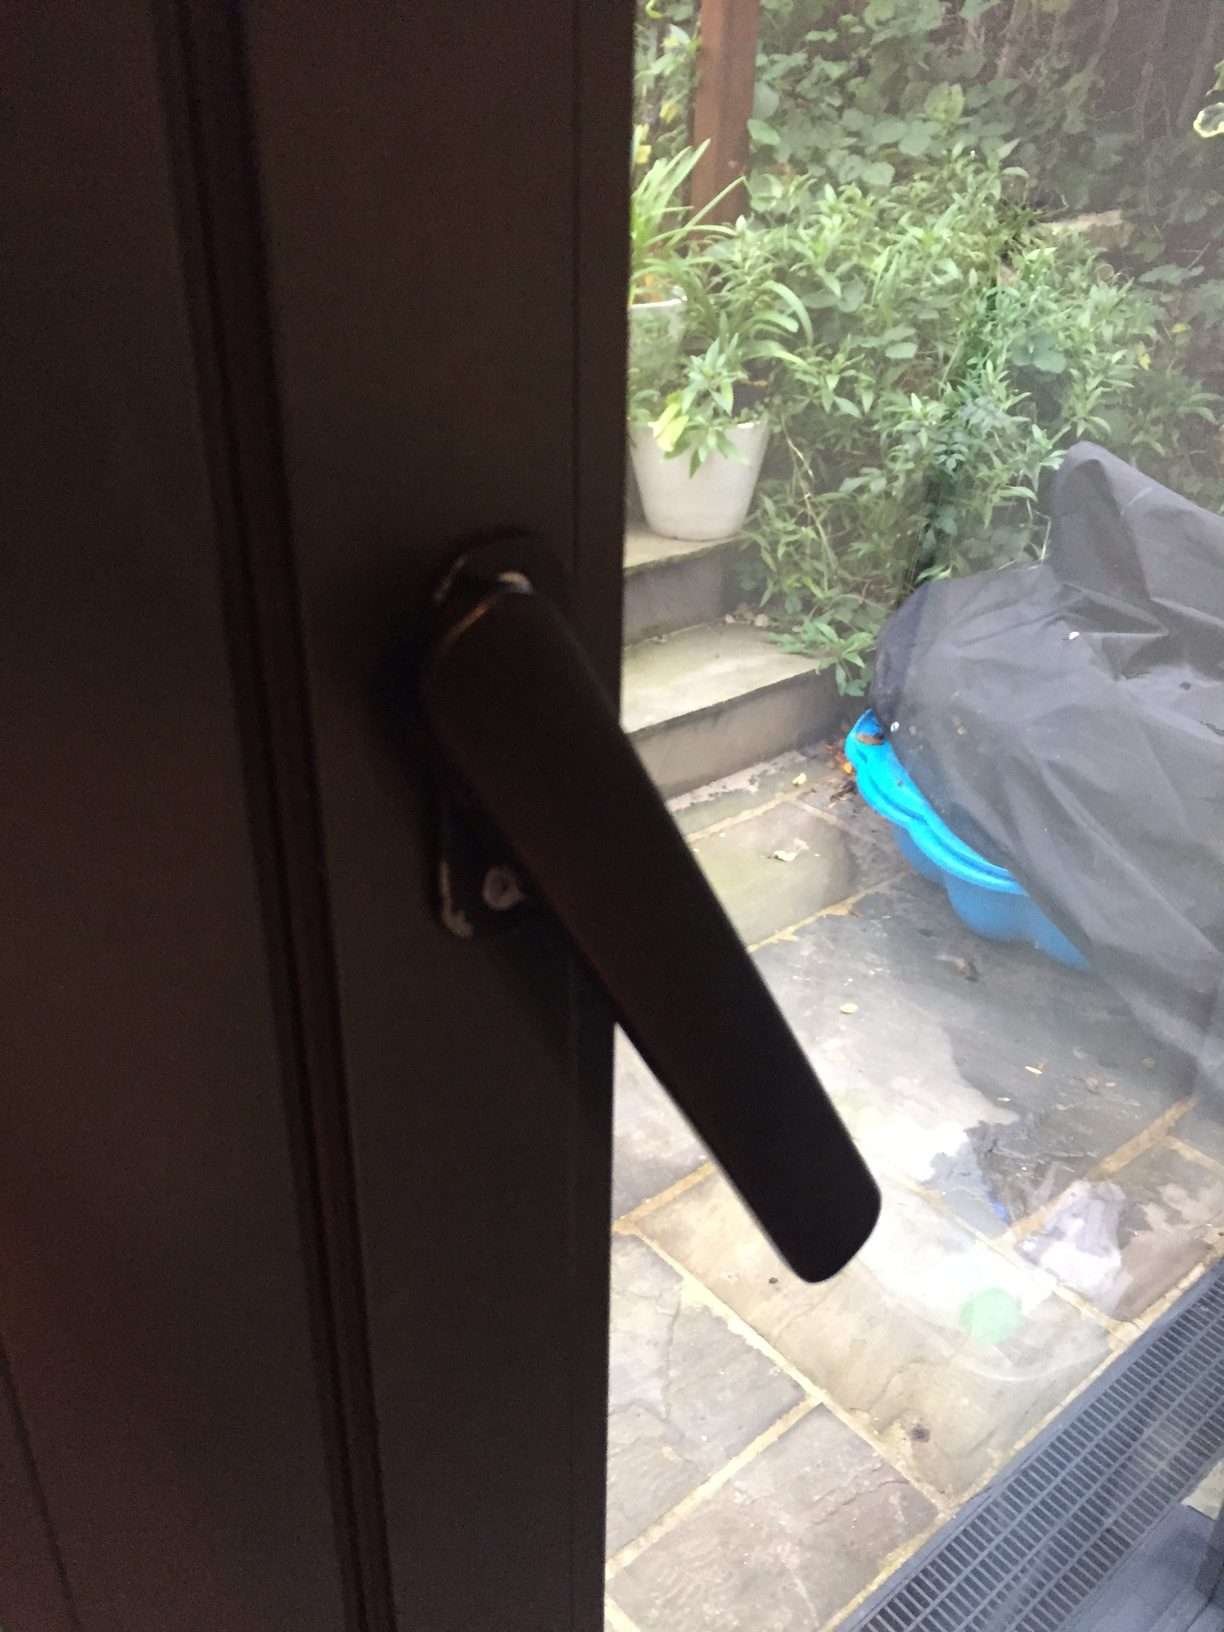 Easy guide to replacing BROKEN bifold door handle (HDB bifold door) BRAND:  A-tech 